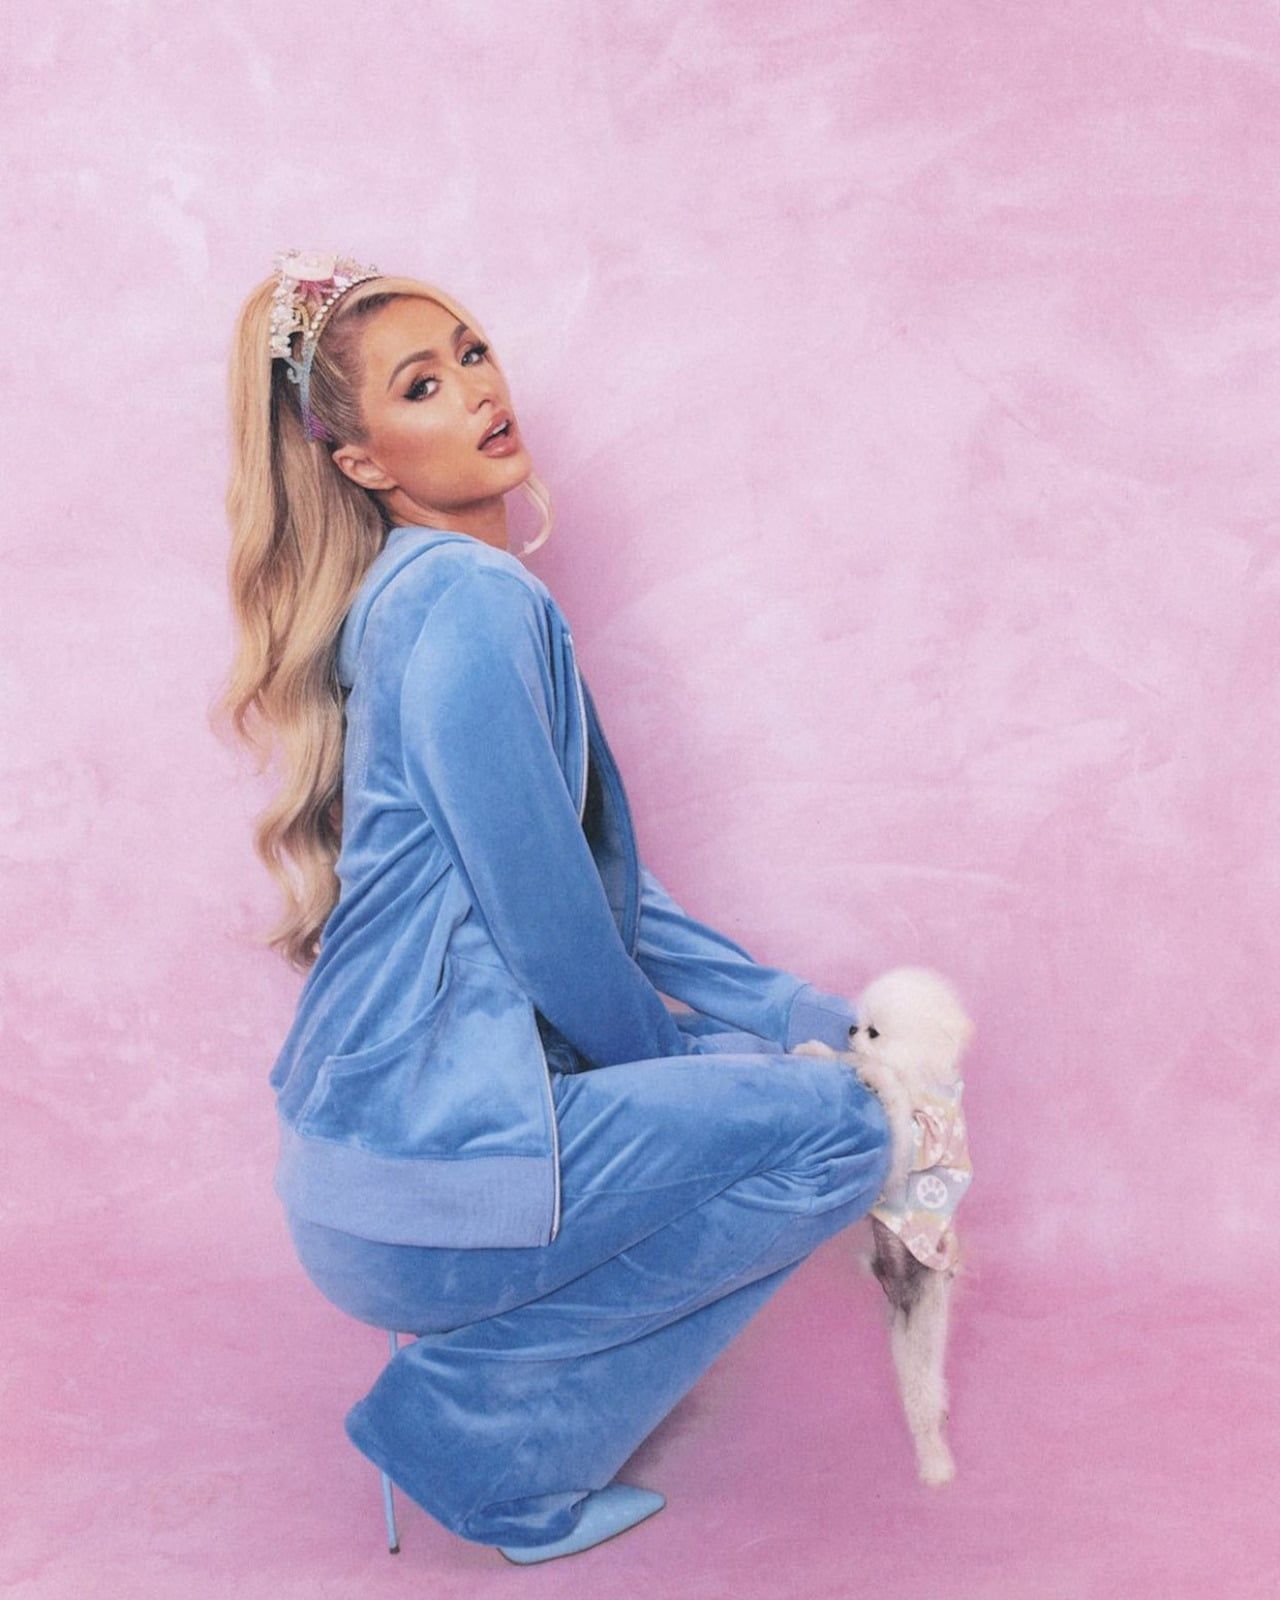 Paris Hilton launches 'iconic' tracksuit collection